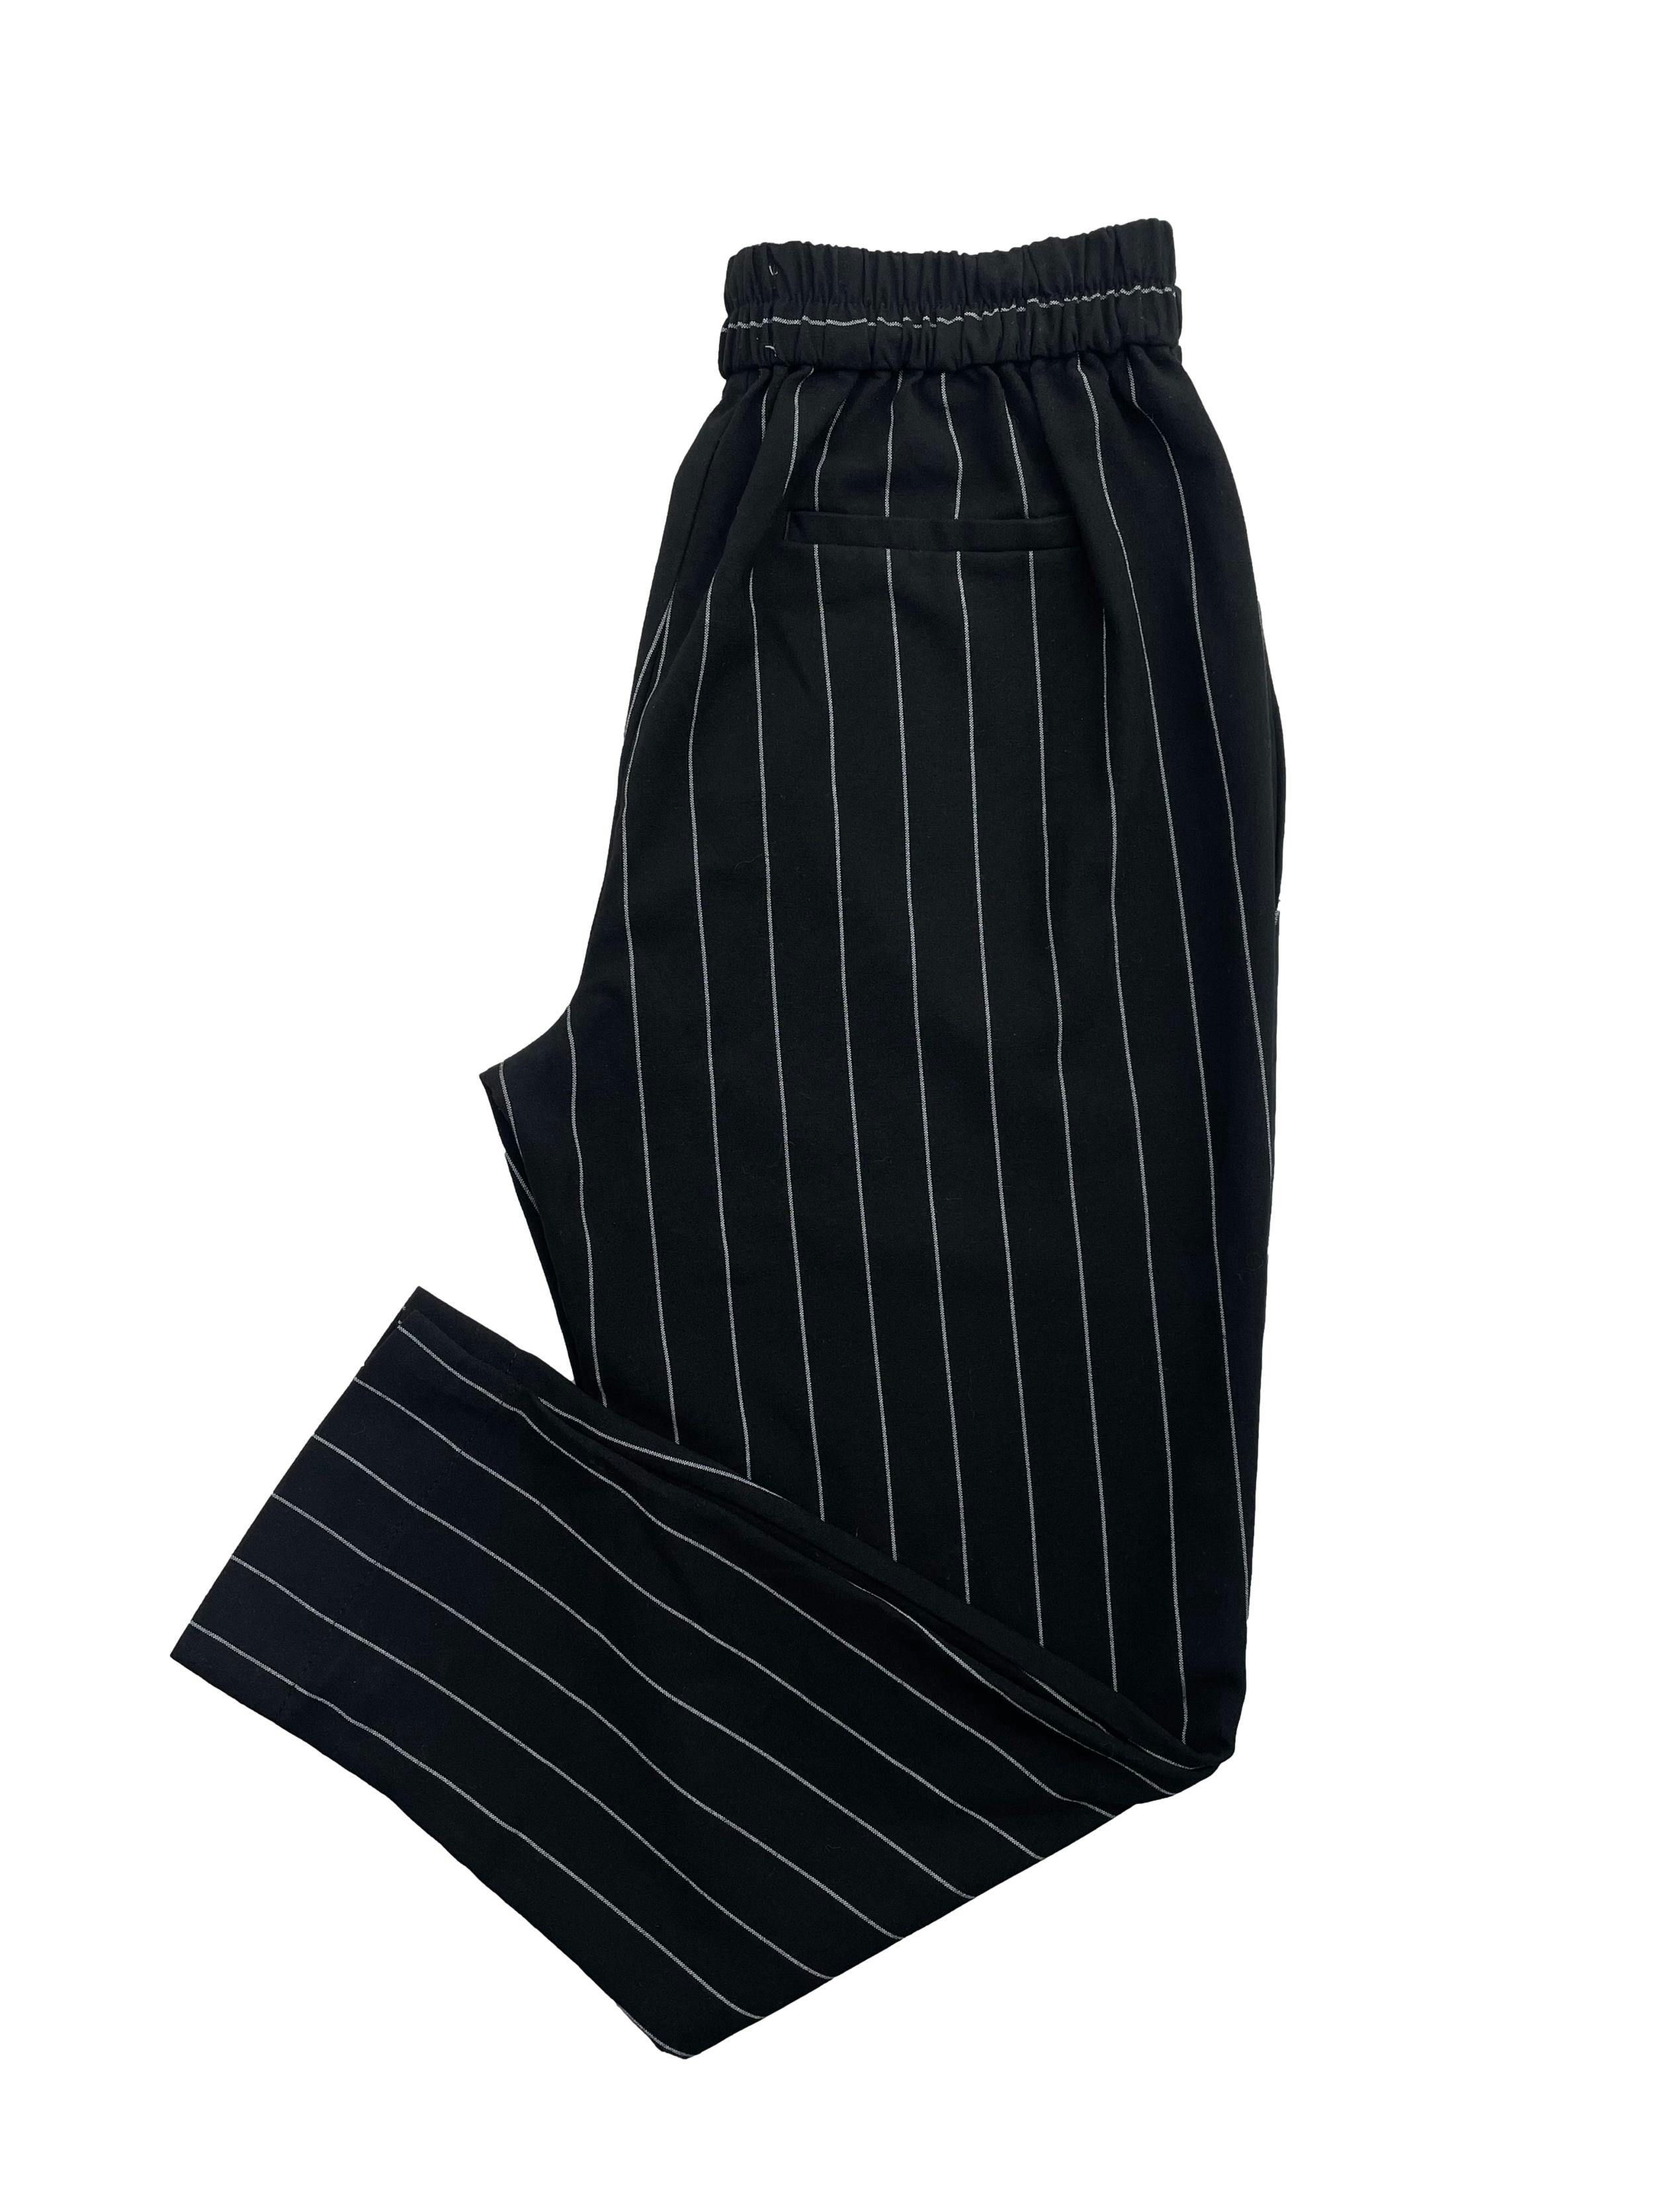 Pantalón Sybilla negro con rayas blancas, con elástico en la pretina Cintura: 66cm (sin estirar), Tiro 28cm Largo: 91cm